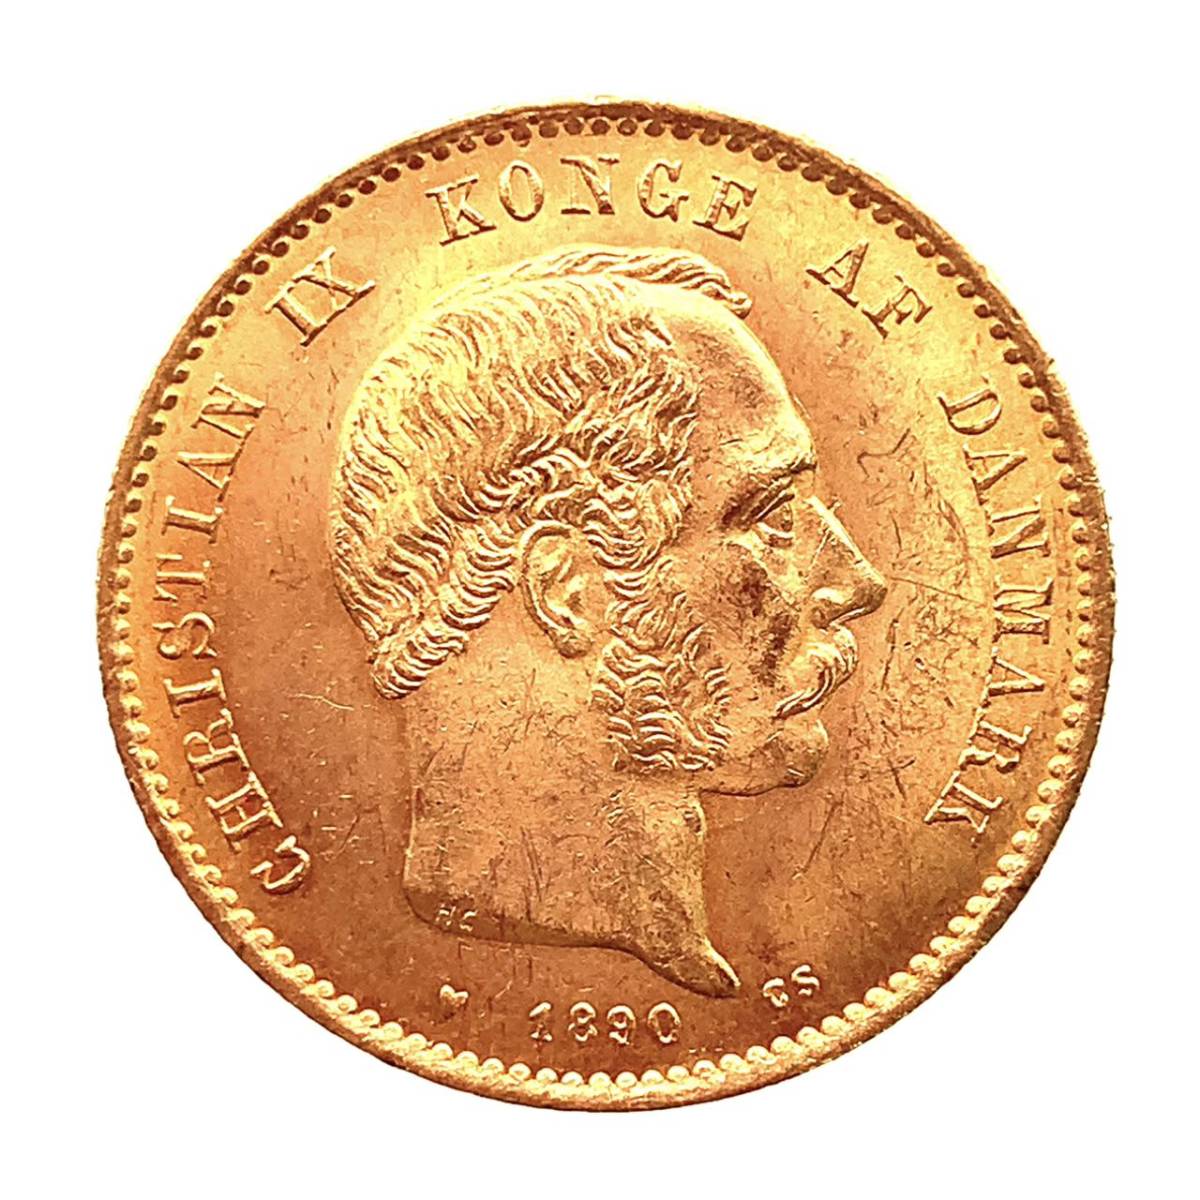 デンマーク クリスチャン9世 20クローネ金貨 1890年 21.6金 8.9g コイン イエローゴールド コレクション Gold 美品_画像1